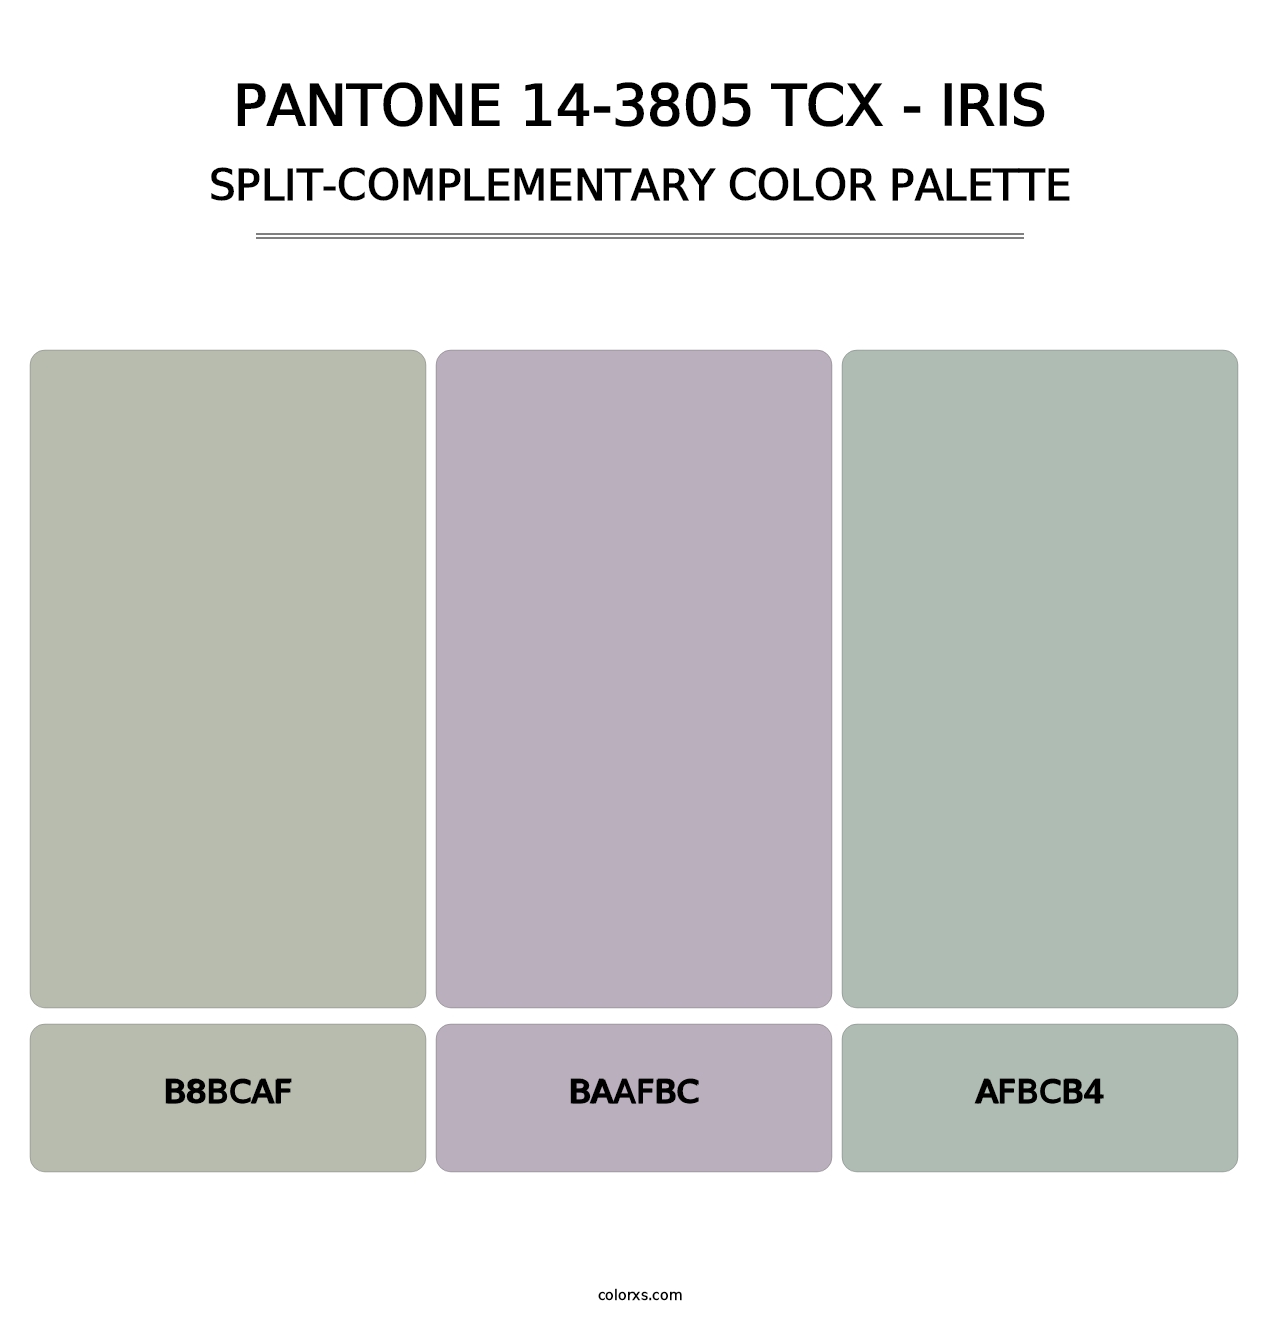 PANTONE 14-3805 TCX - Iris - Split-Complementary Color Palette